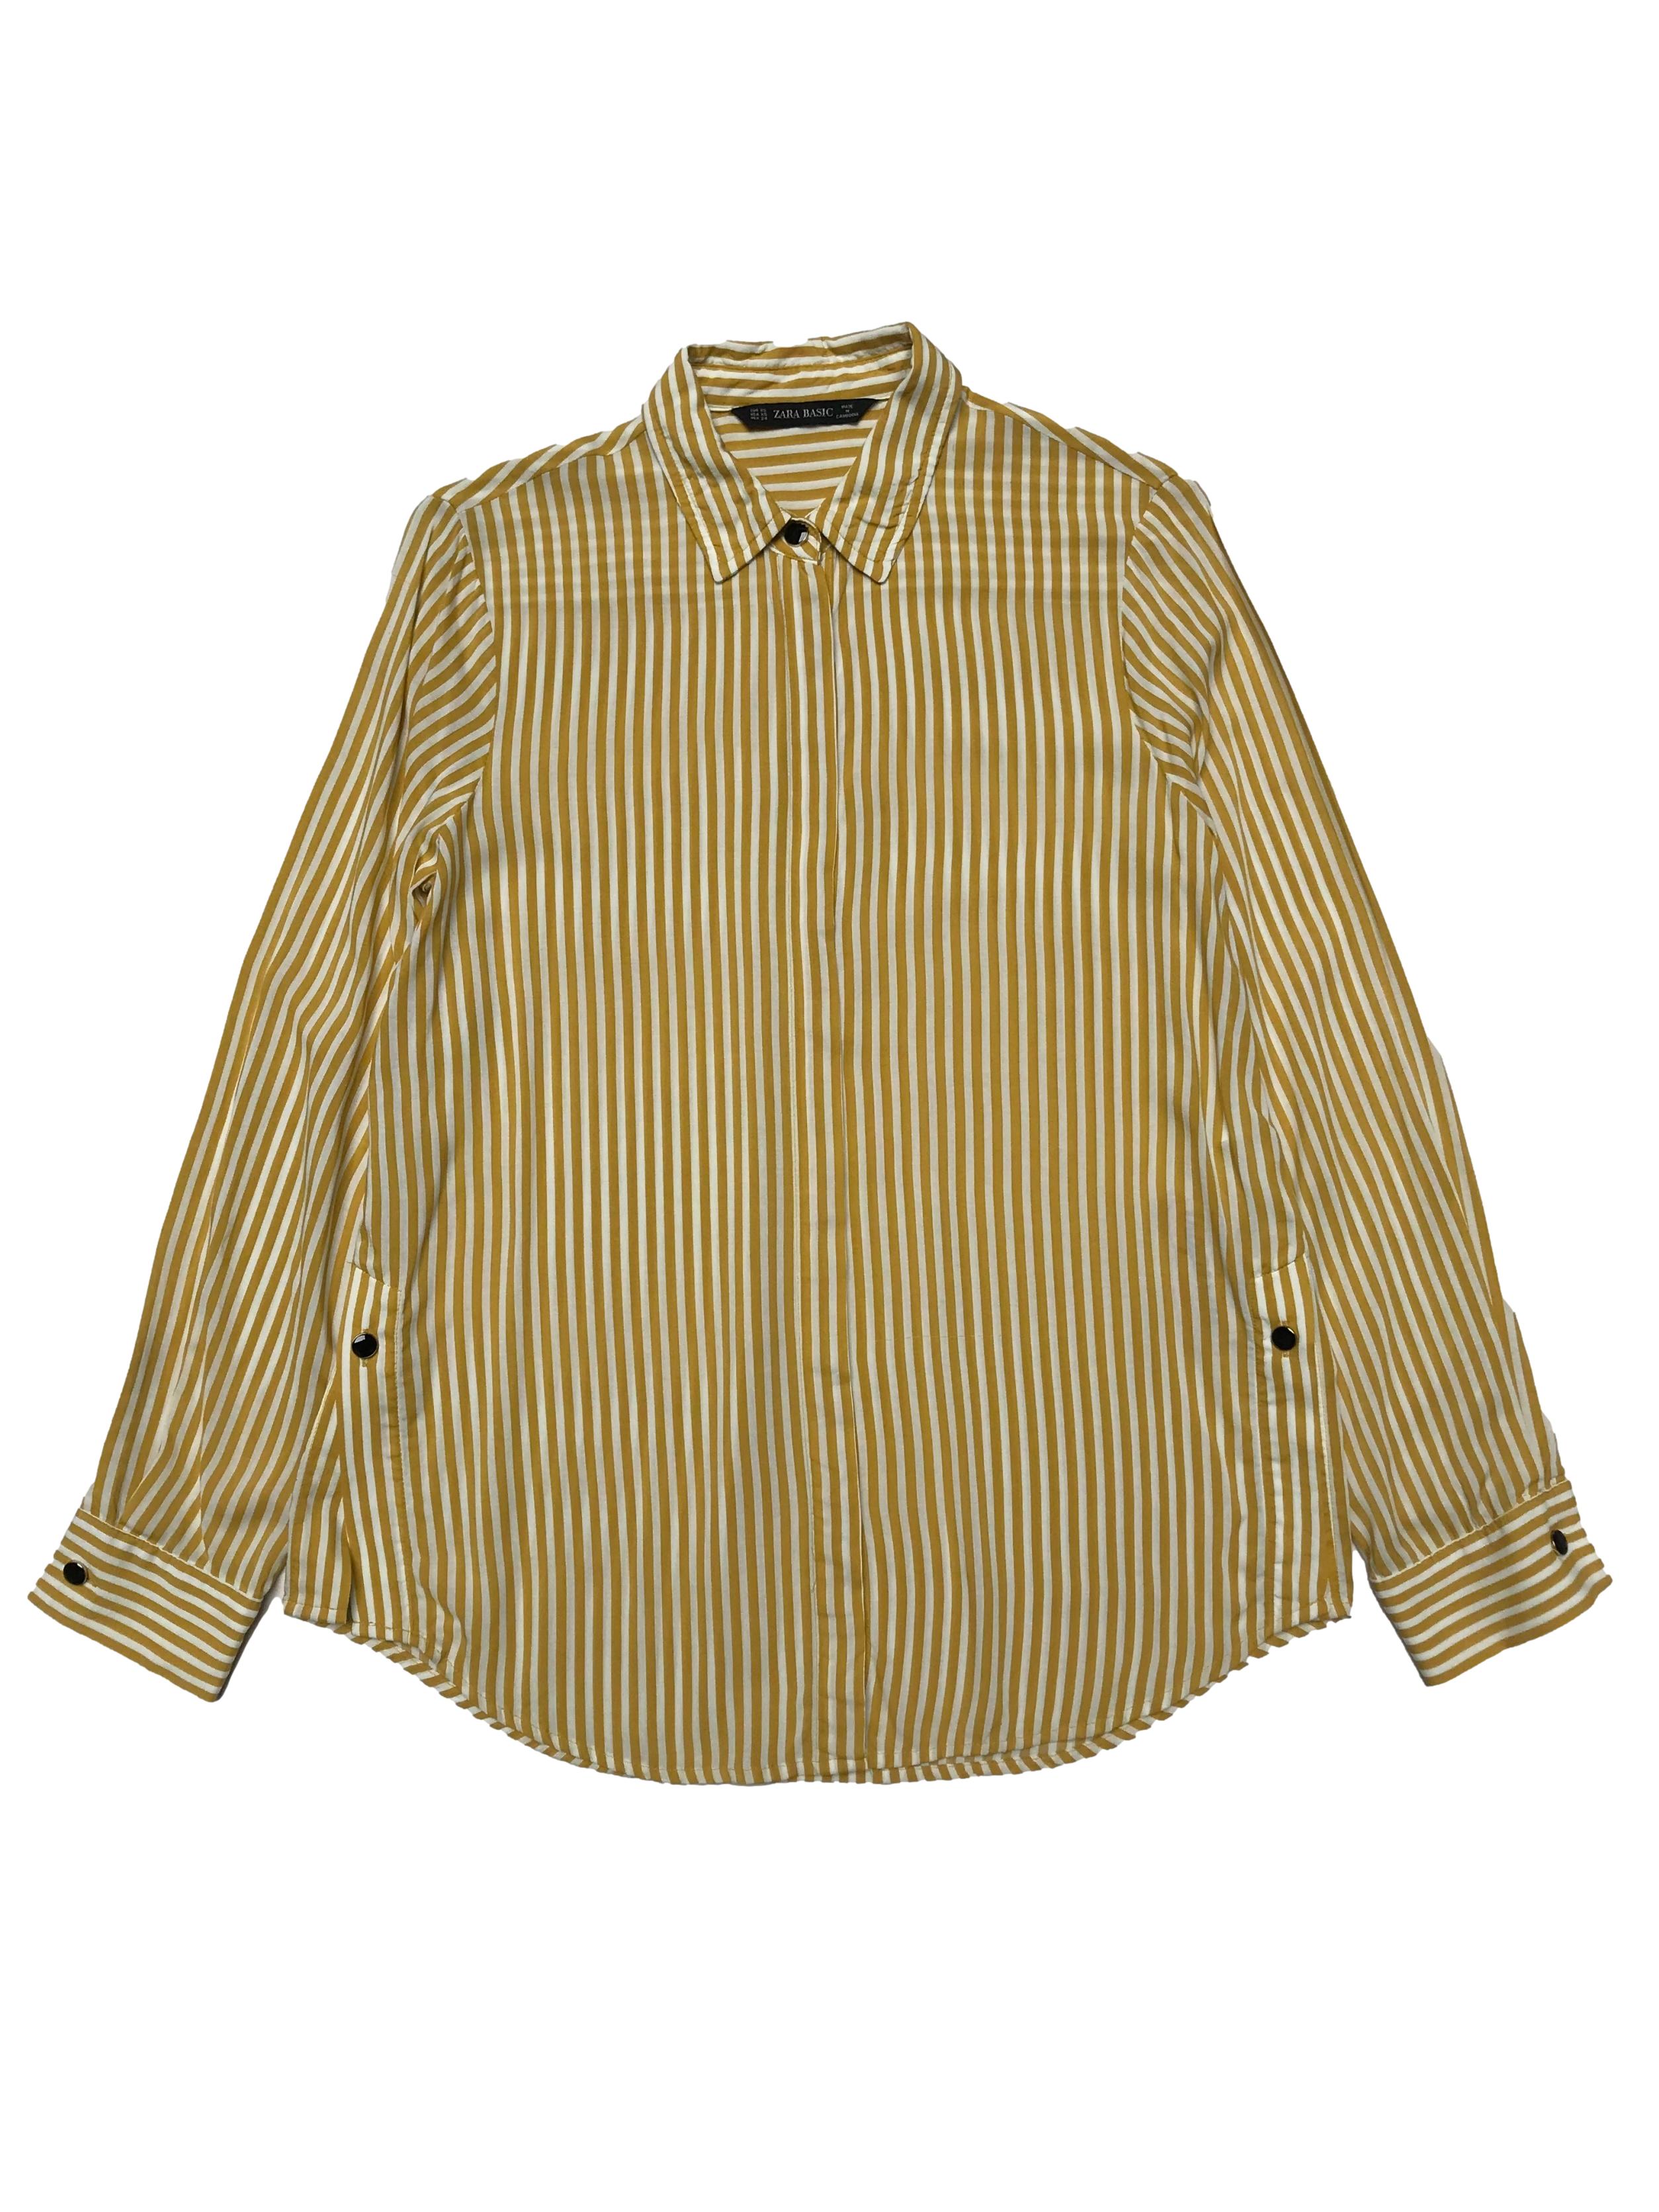 Blusa Zara a rayas blancas y amarillas, botones metálicos en delantero, puños y aberturas laterales, tela viscosa fresca. Busto 96cm Largo 57-66cm